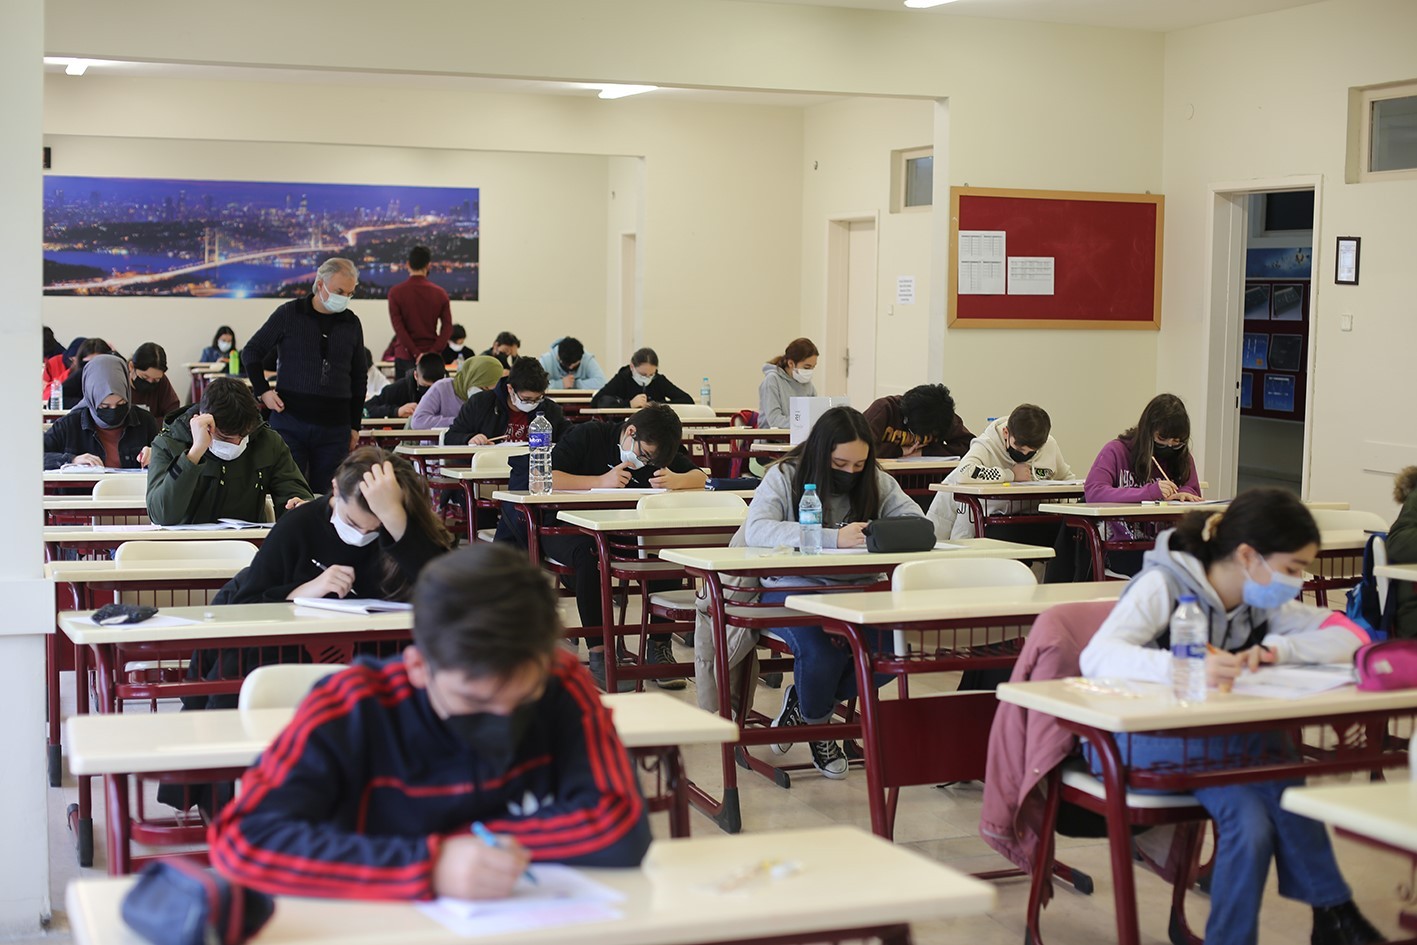 İhlas’a Geçiş Bursluluk Sınavı yoğun katılımla gerçekleşti #istanbul